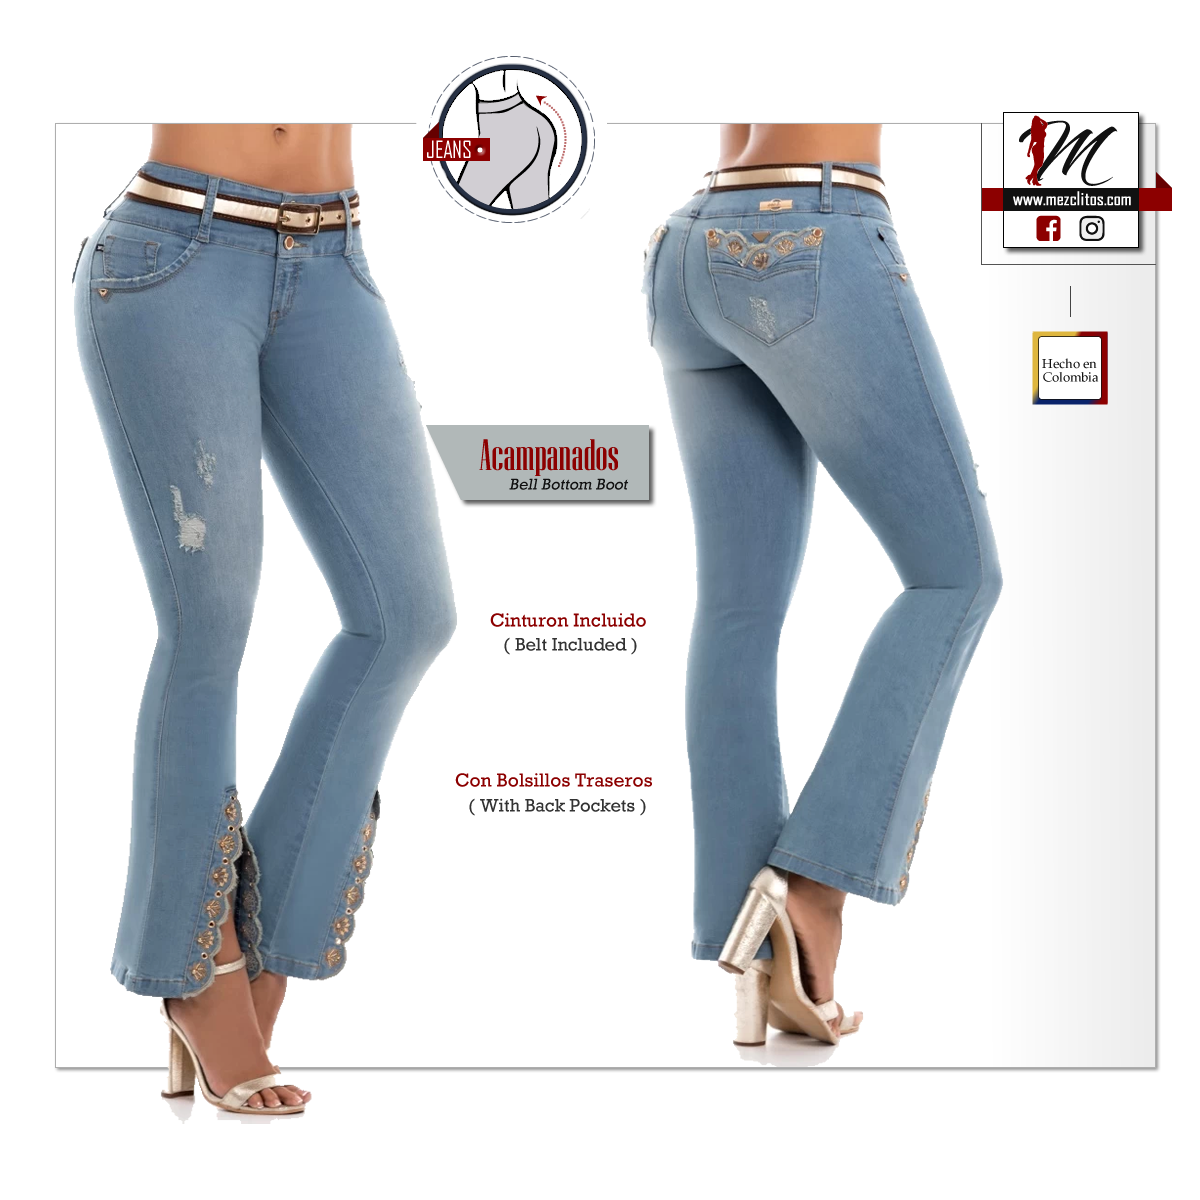 ENE2 Jeans Acampanados 903339 - 100% Colombianos